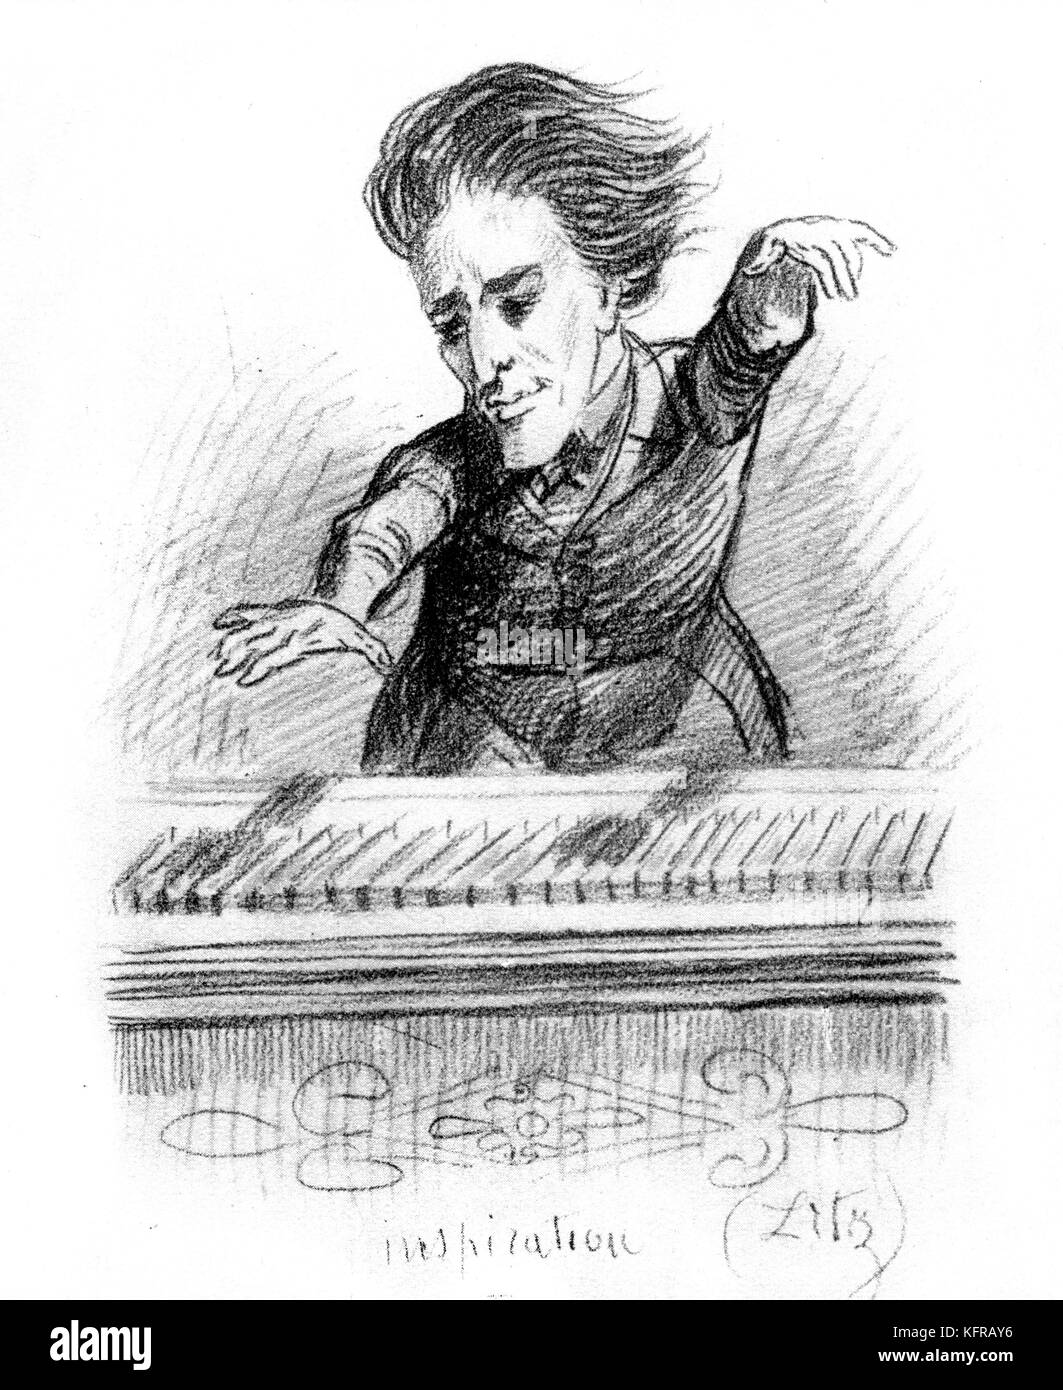 Franz Liszt - caricature, probablement dessiné c. 1837. Intitulé 'Inspiration'. FL : pianiste et compositeur hongrois, 22 octobre 1811 - 31 juillet 1886. Banque D'Images